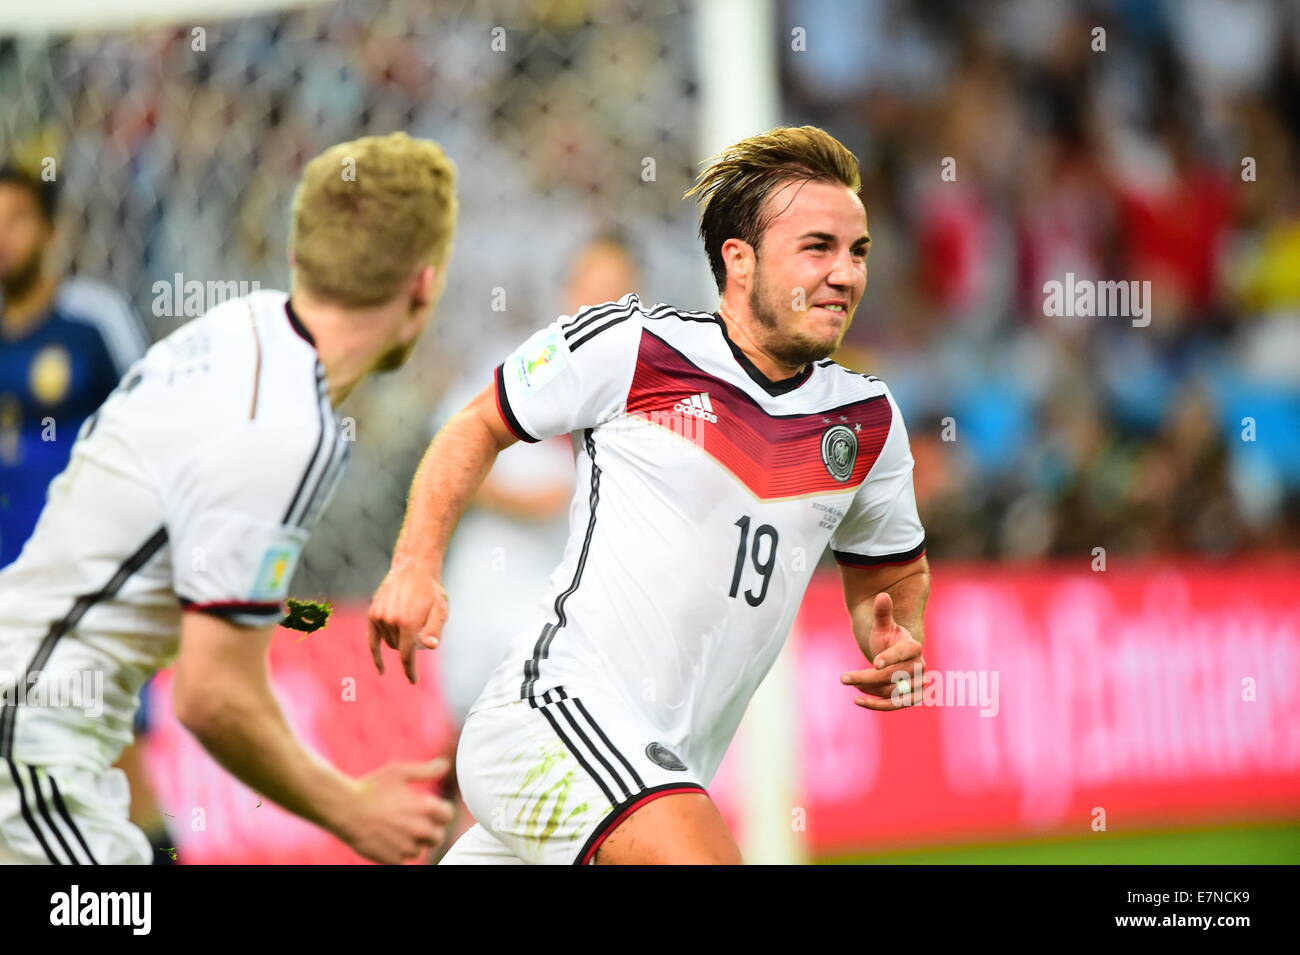 Mario GOETZE Gotze. Argentina v Germany. Final. FIFA World Cup 2014 Brazil. Maracana Stadium, Rio. 13 July 2014. Stock Photo